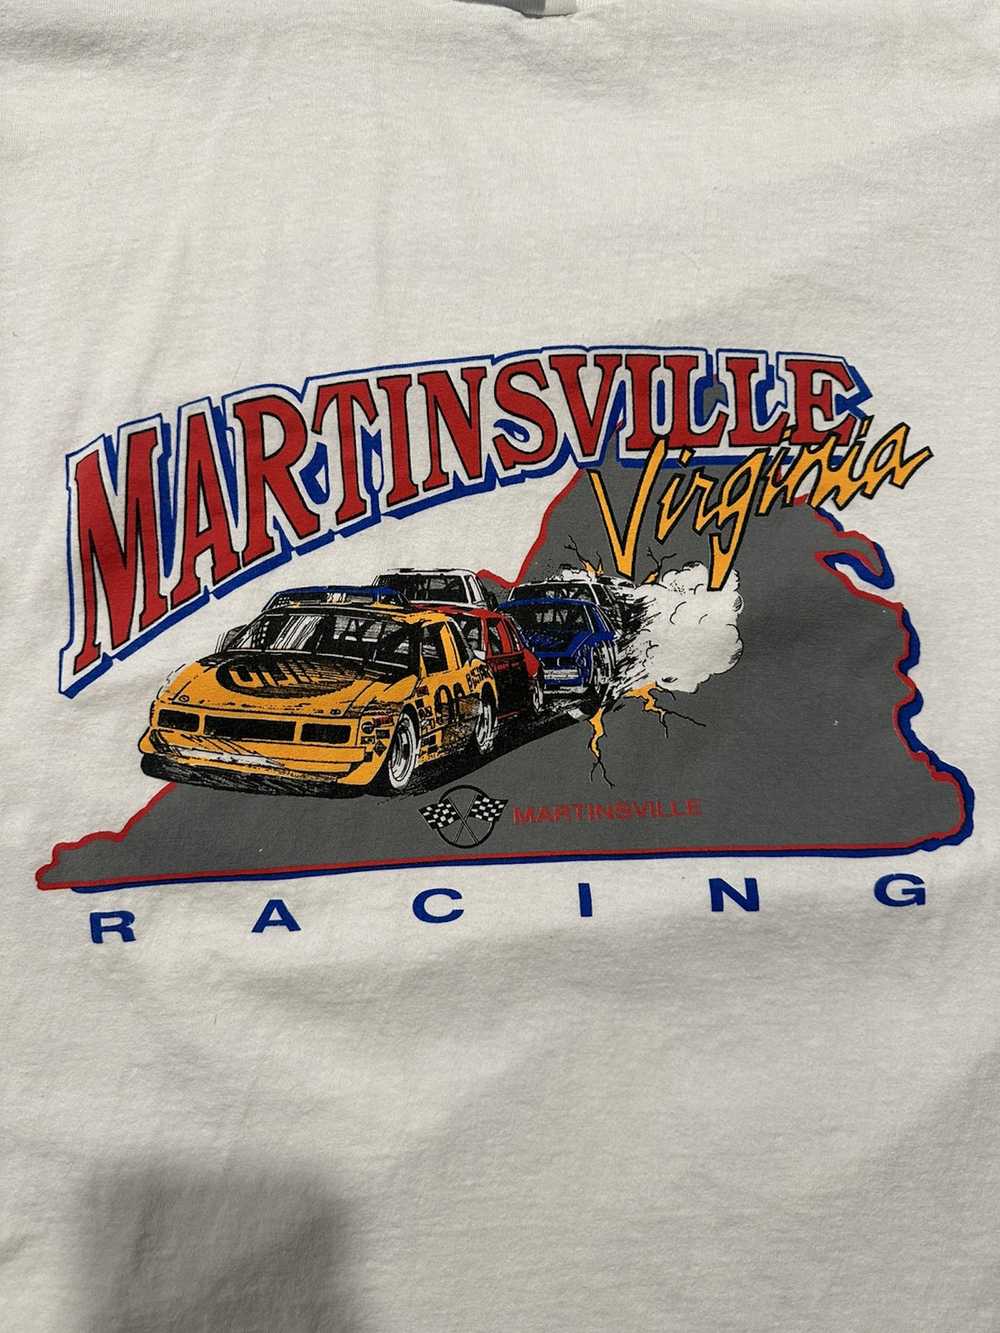 Vintage Vintage Martinsville Racing T-shirt - image 2